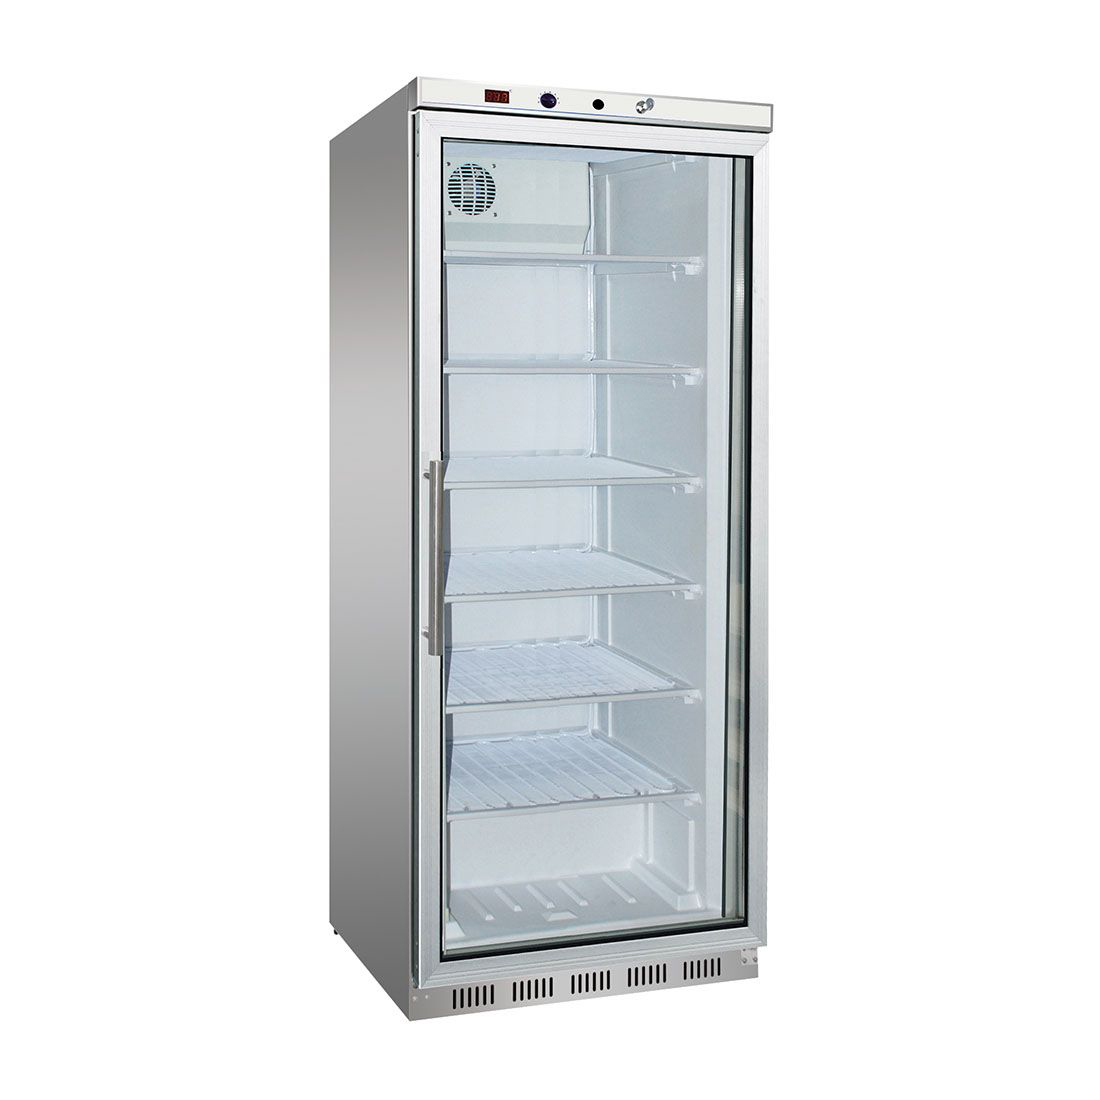 HF600G S/S Display Freezer with Glass Door